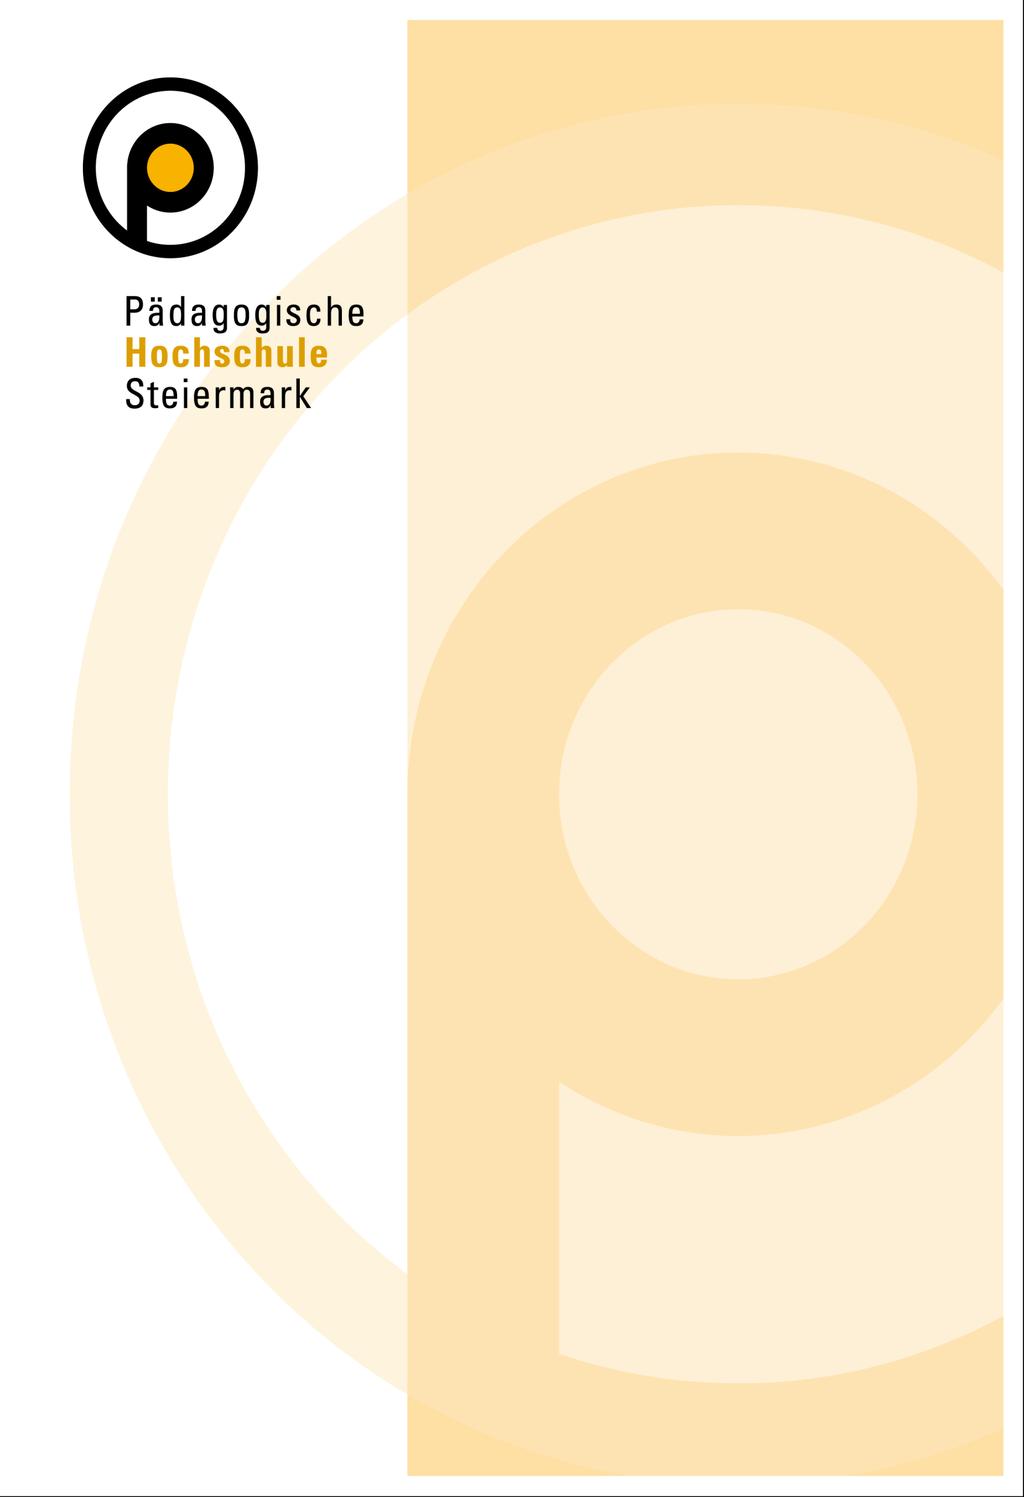 Studienkommission der Pädagogischen Hochschule Steiermark Verordnung der Studienkommission vom 17.05.2010 Genehmigung durch das Rektorat am 21.05.2010 Kenntnisnahme durch den Hochschulrat vom 17.05.2010 gemäß Hochschulgesetz 2005 (BGBl.